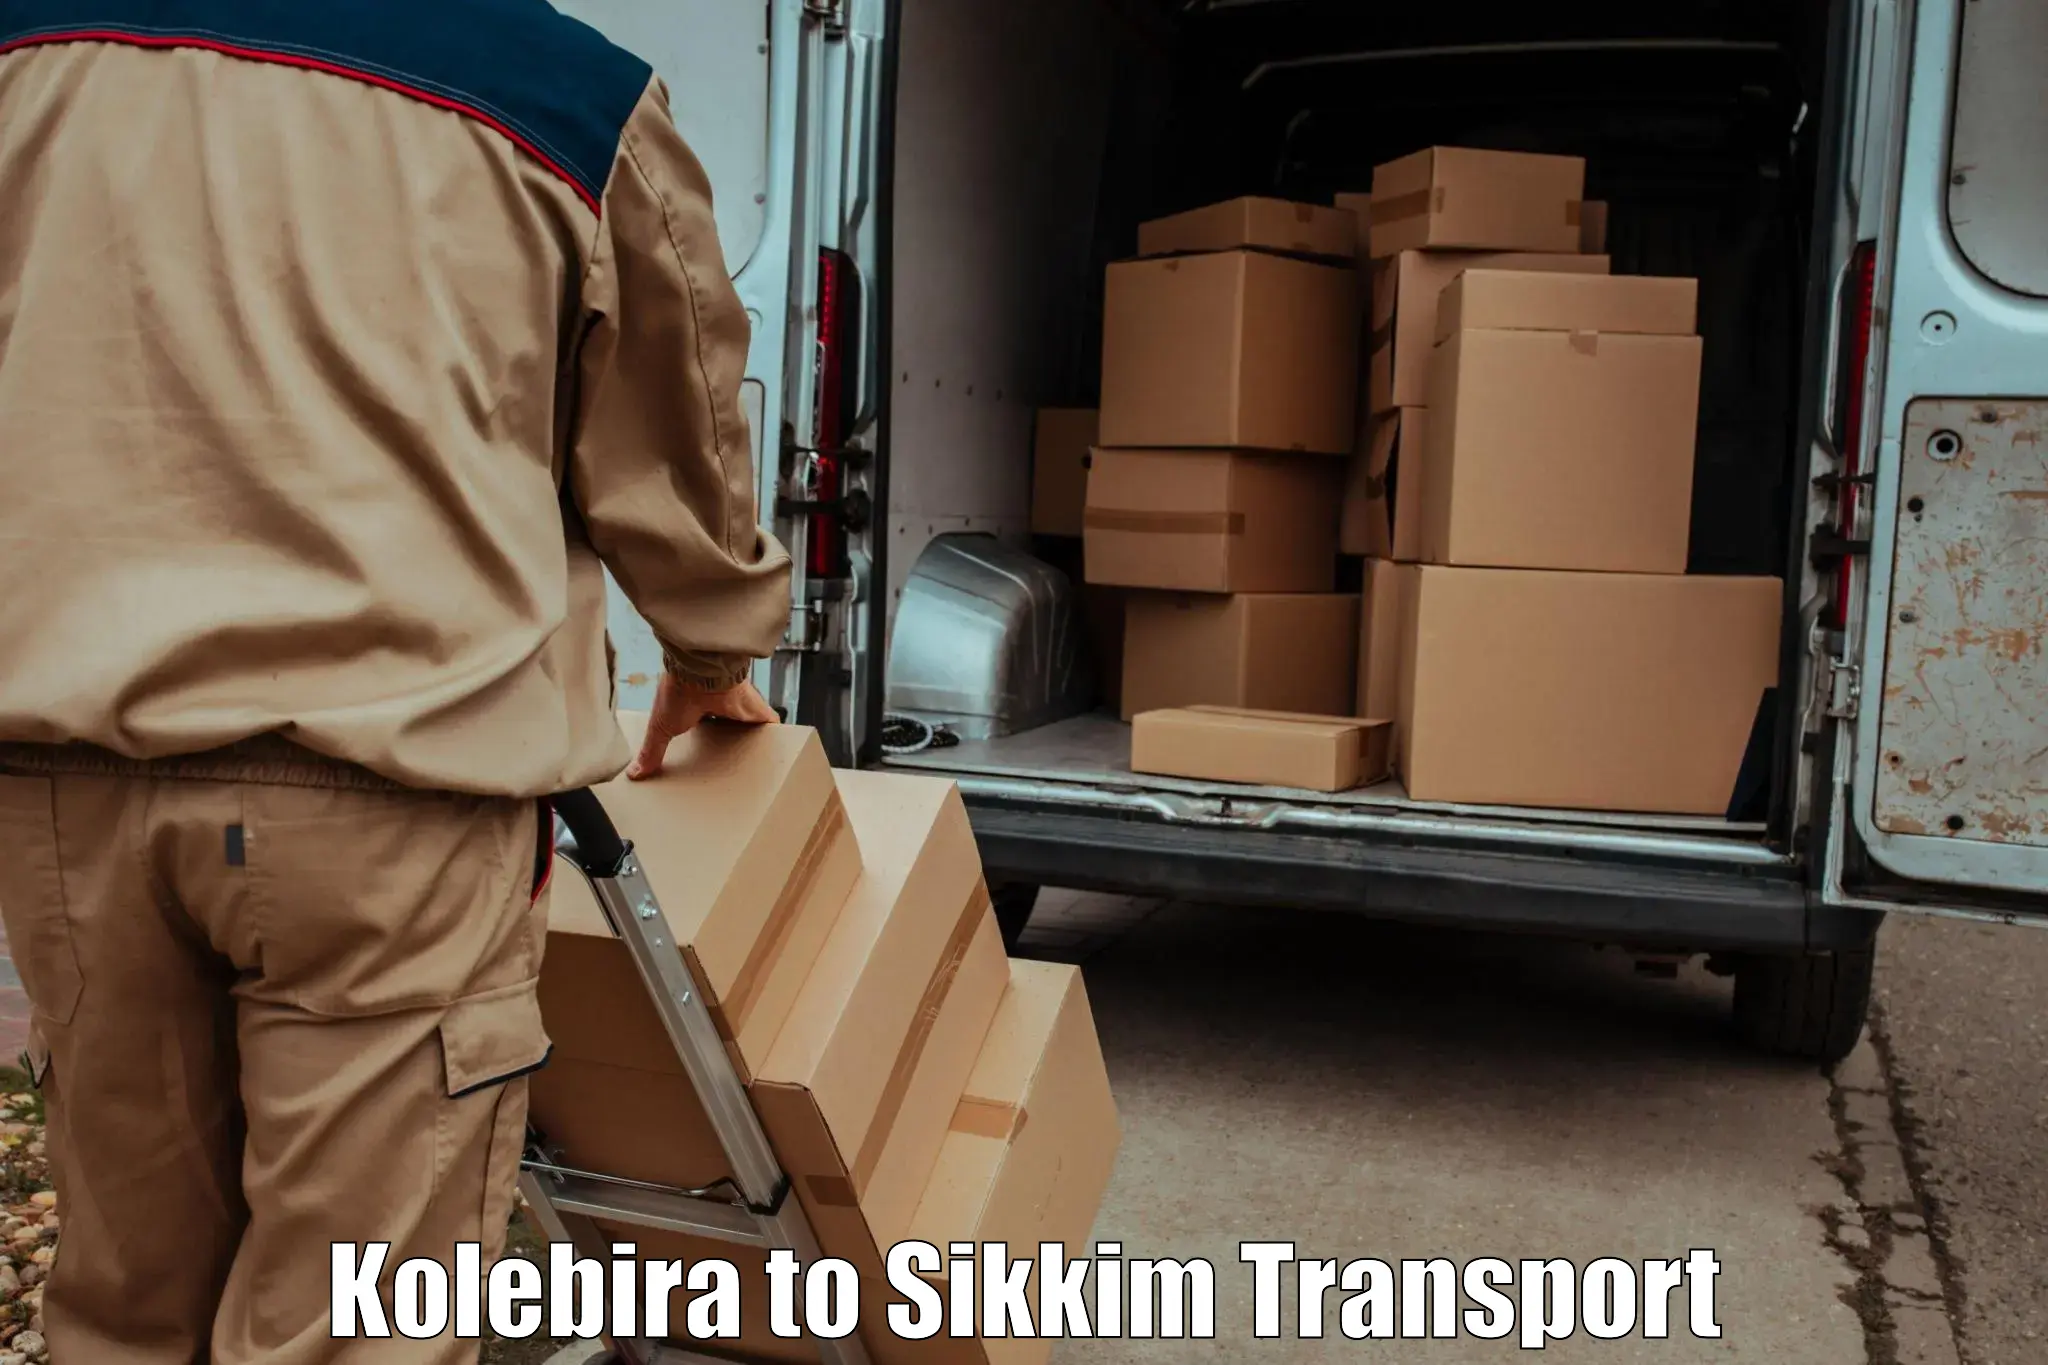 Furniture transport service Kolebira to Sikkim